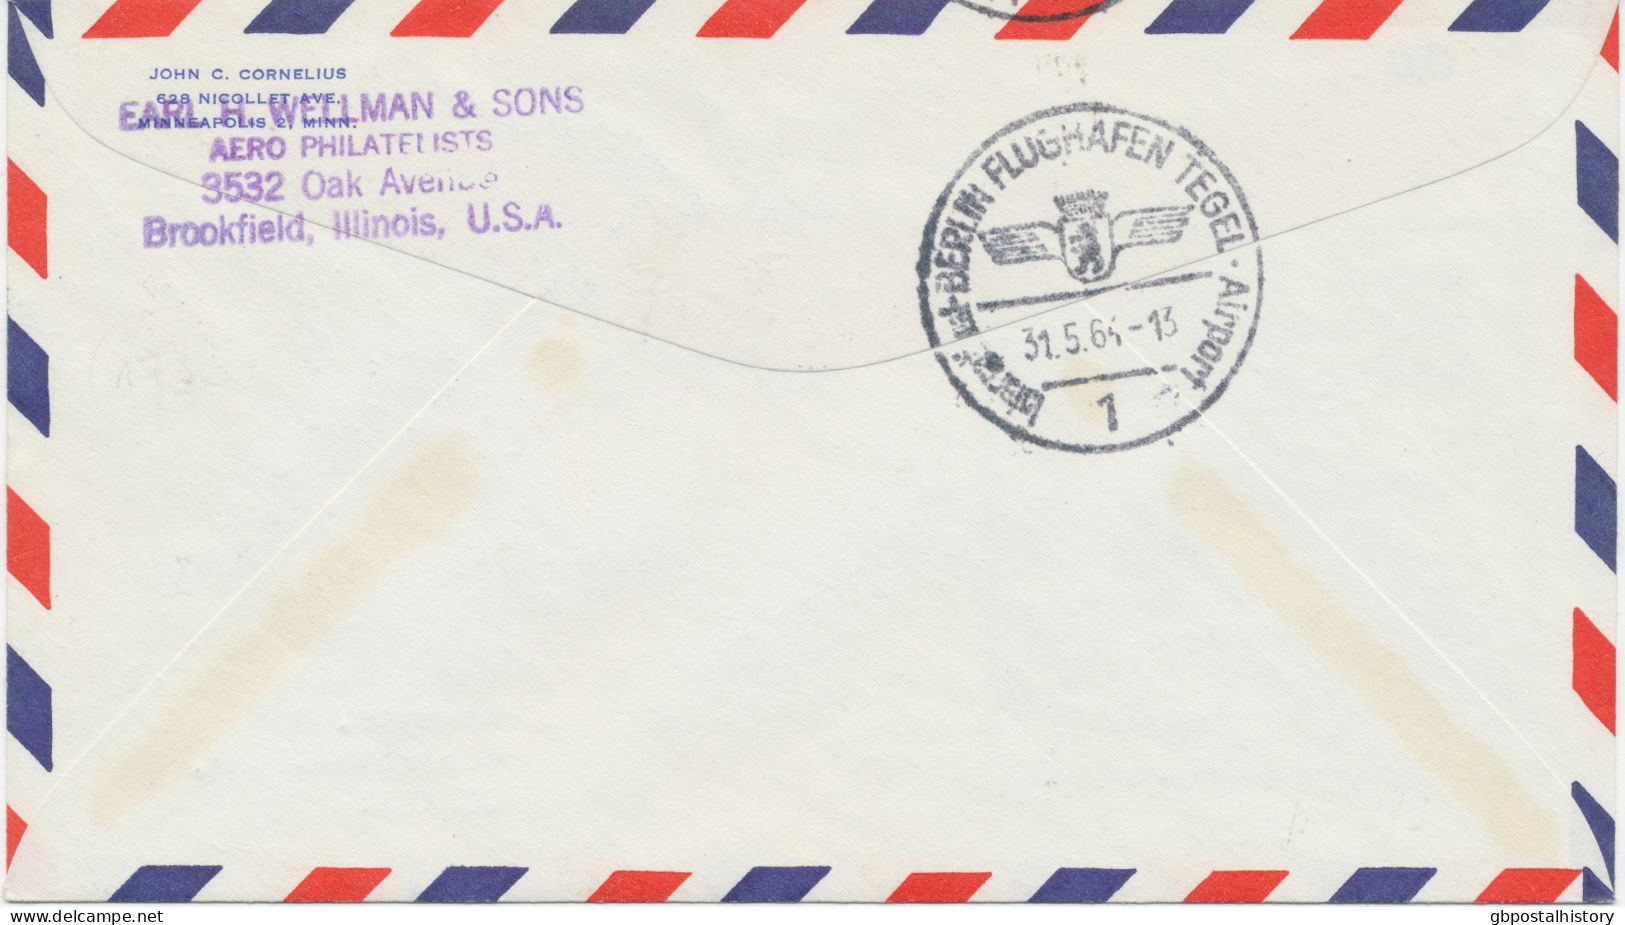 VEREINTE NATIONEN NEW YORK 1964 Erstflug Pan American Airlines First Direct Jet Air Mail Service „VEREINTE NATIONEN NY - - Posta Aerea